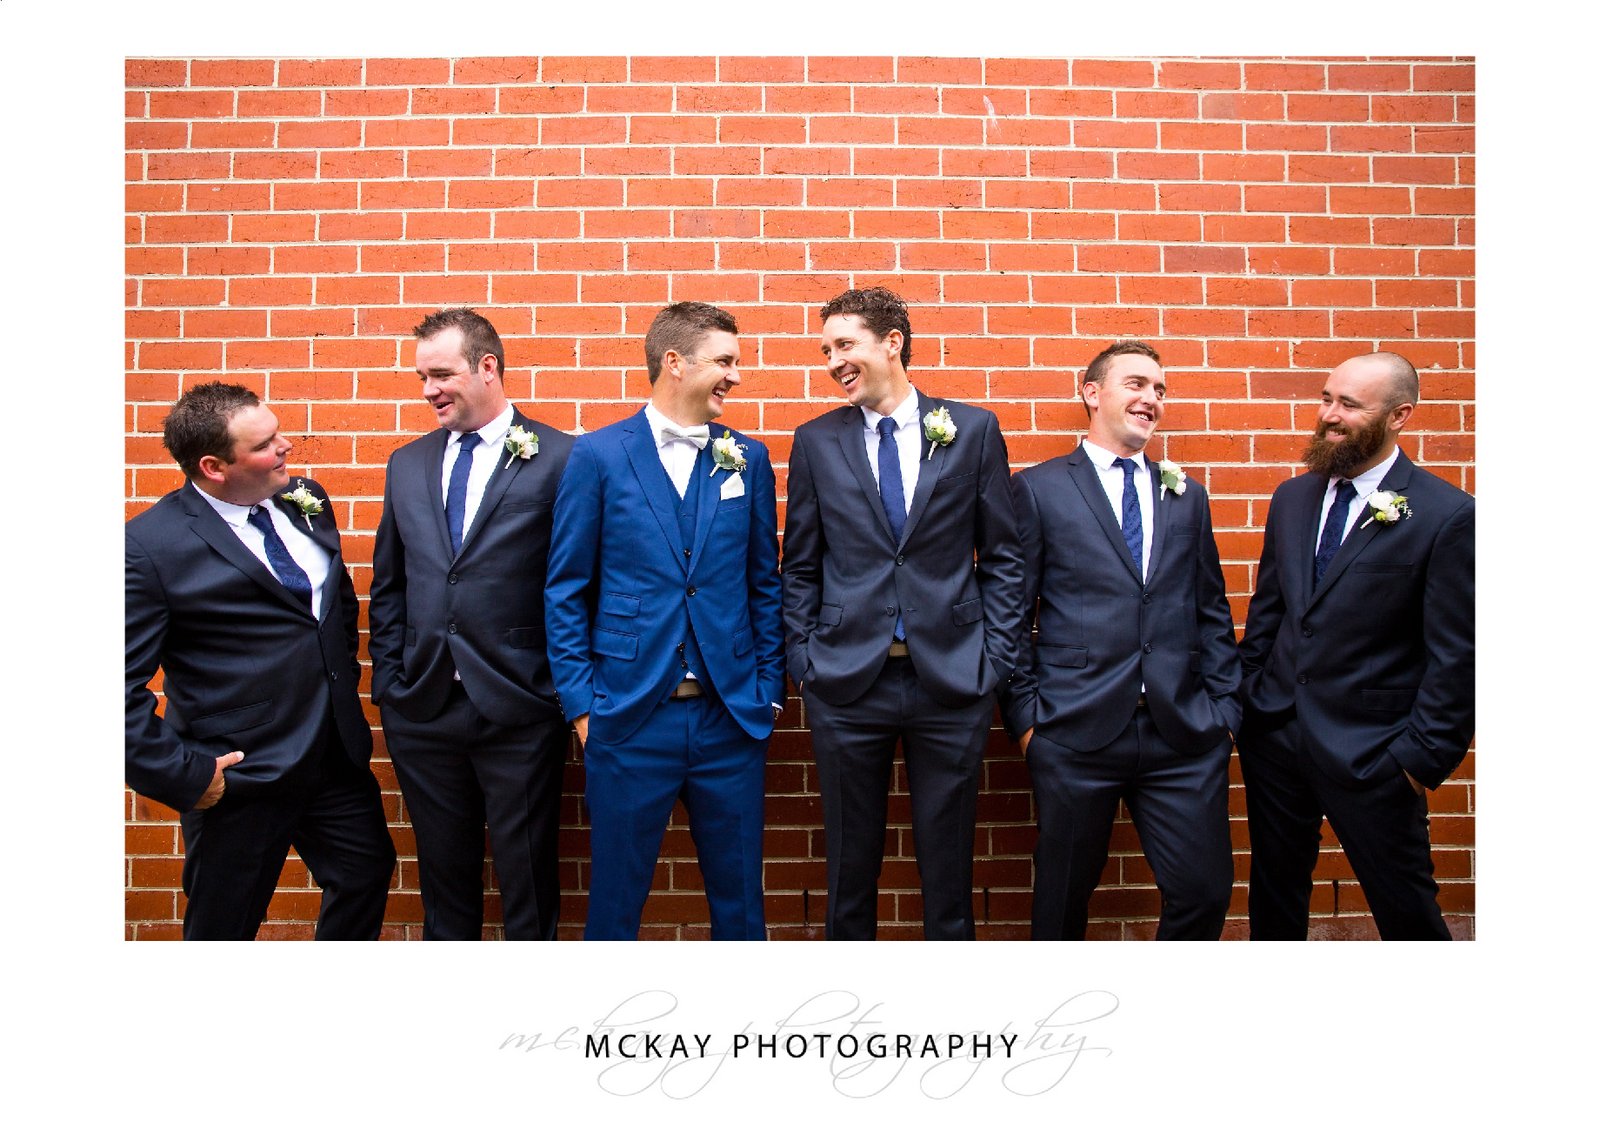 Groom groomsmen wedding photo